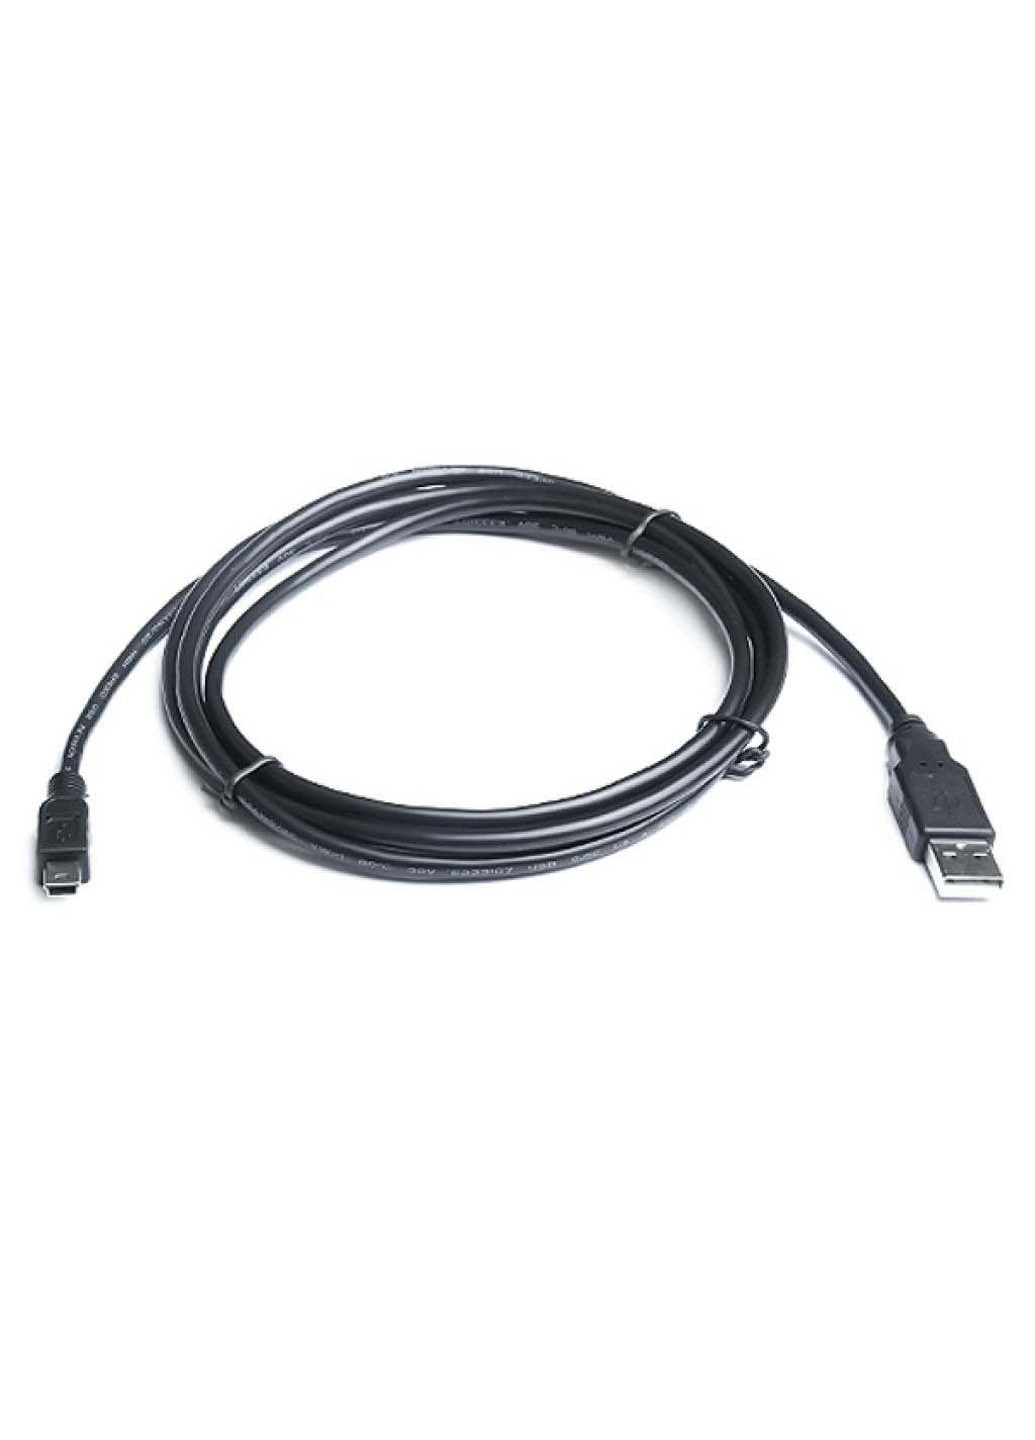 Дата кабель (EL123500006) Real-El usb 2.0 am to mini 5p 1.8m (239381226)